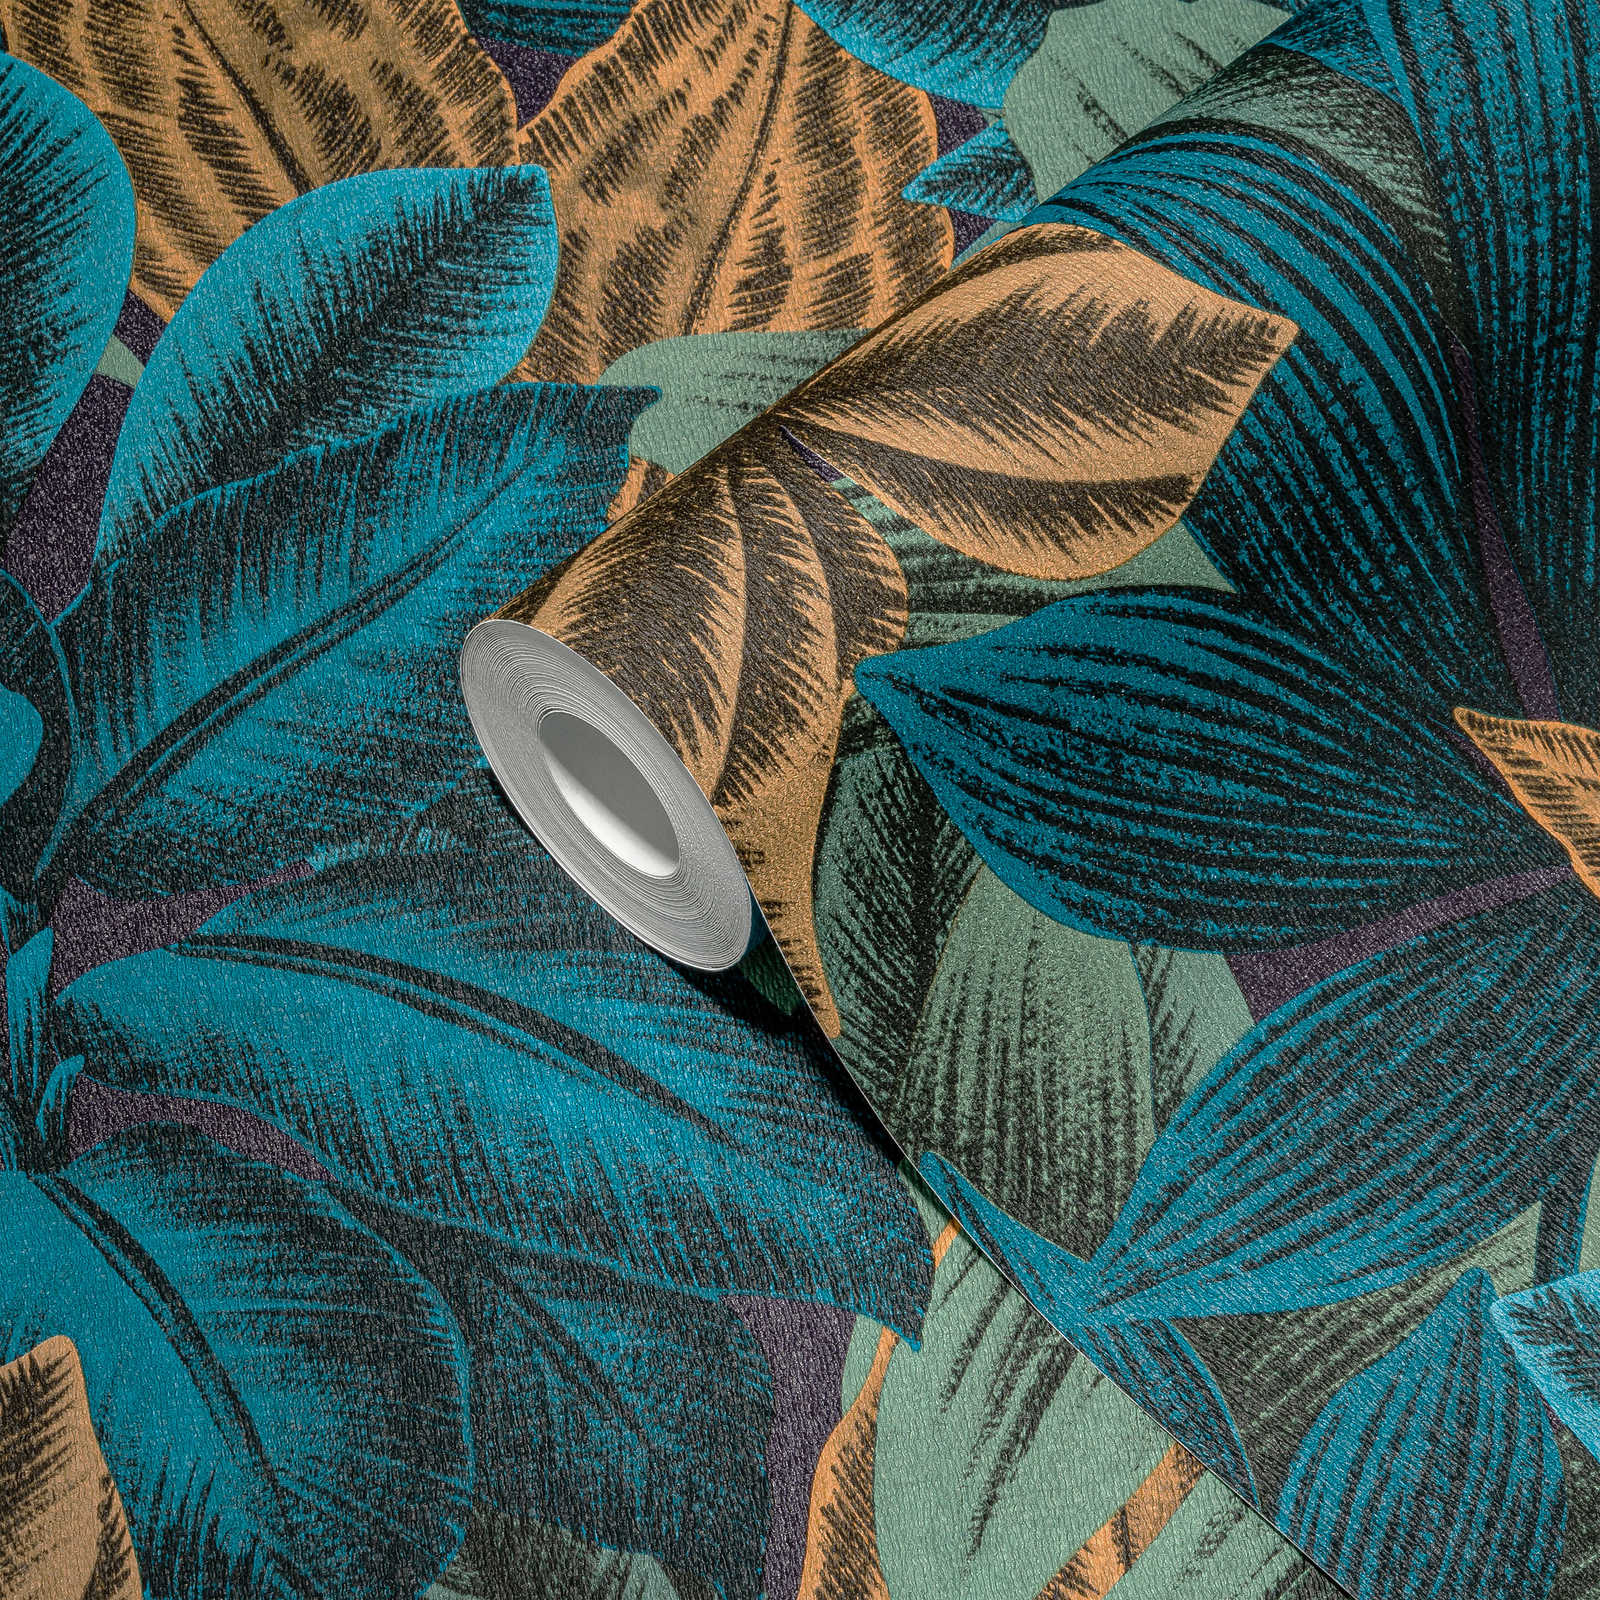             Florale Vliestapete mit Dschungelblattmotiv – Blau, Orange, Lila
        